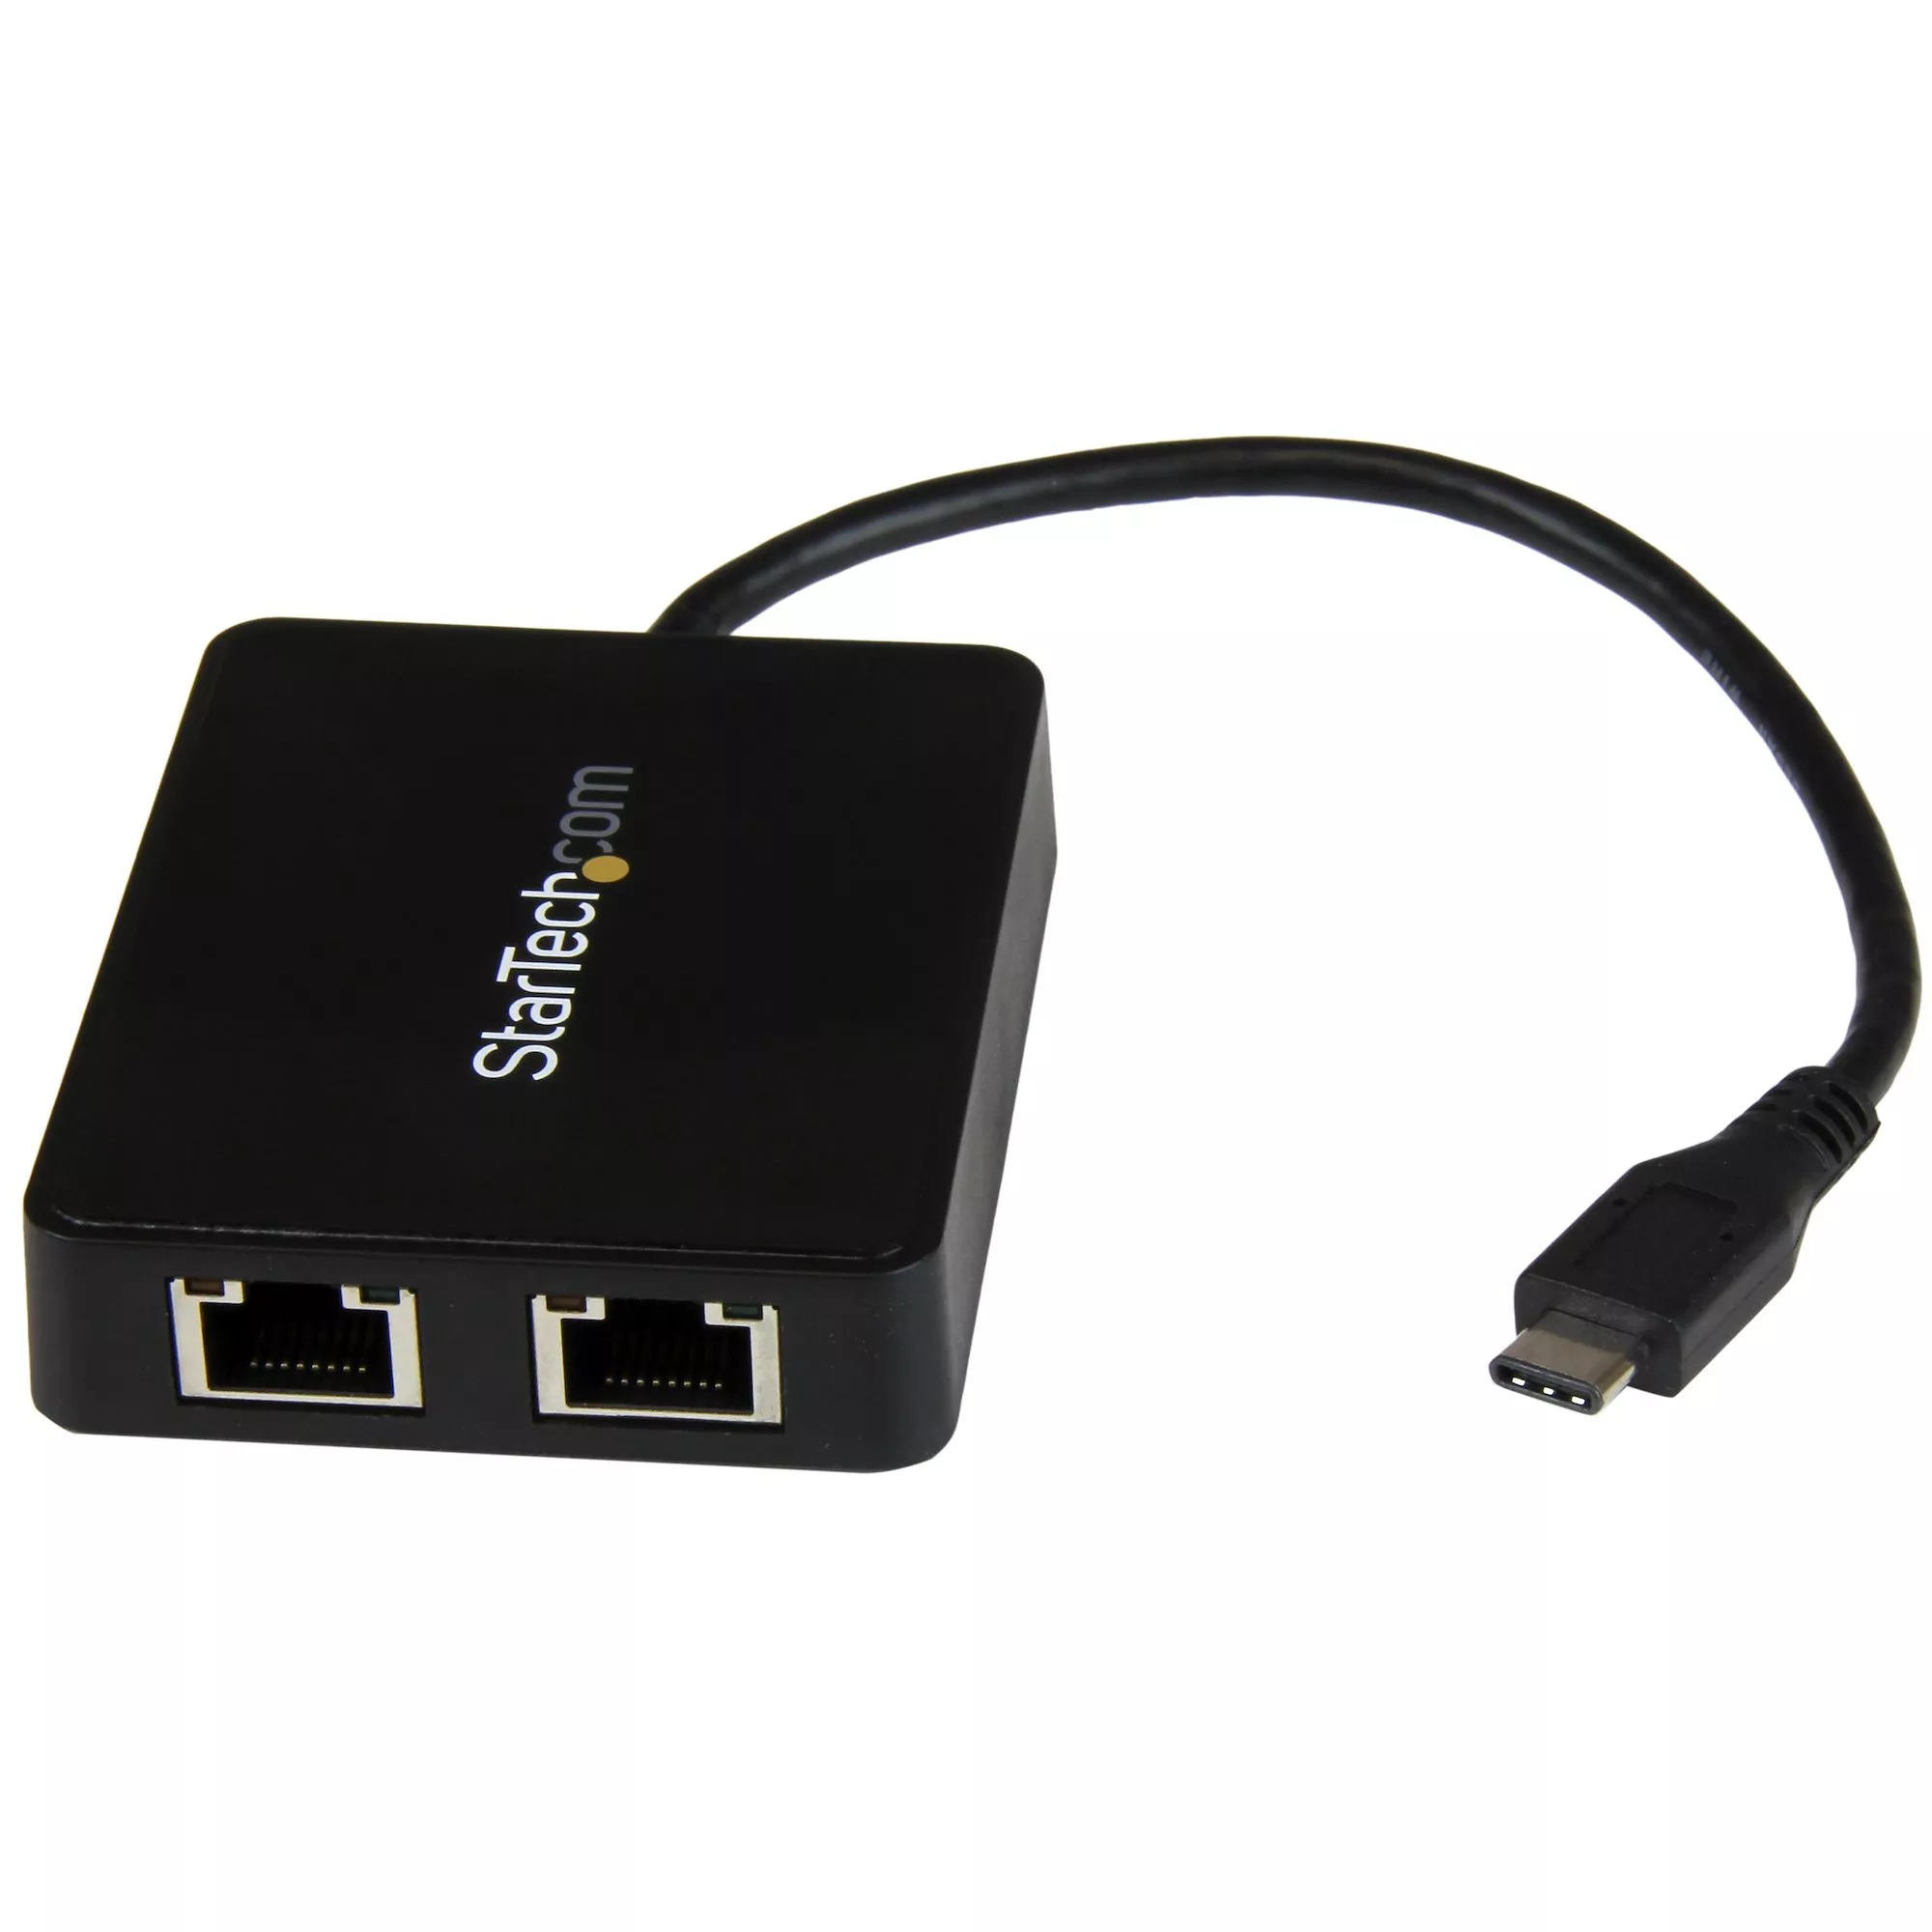 Vente Câble USB StarTech.com Adaptateur réseau USB-C vers 2 ports Gigabit